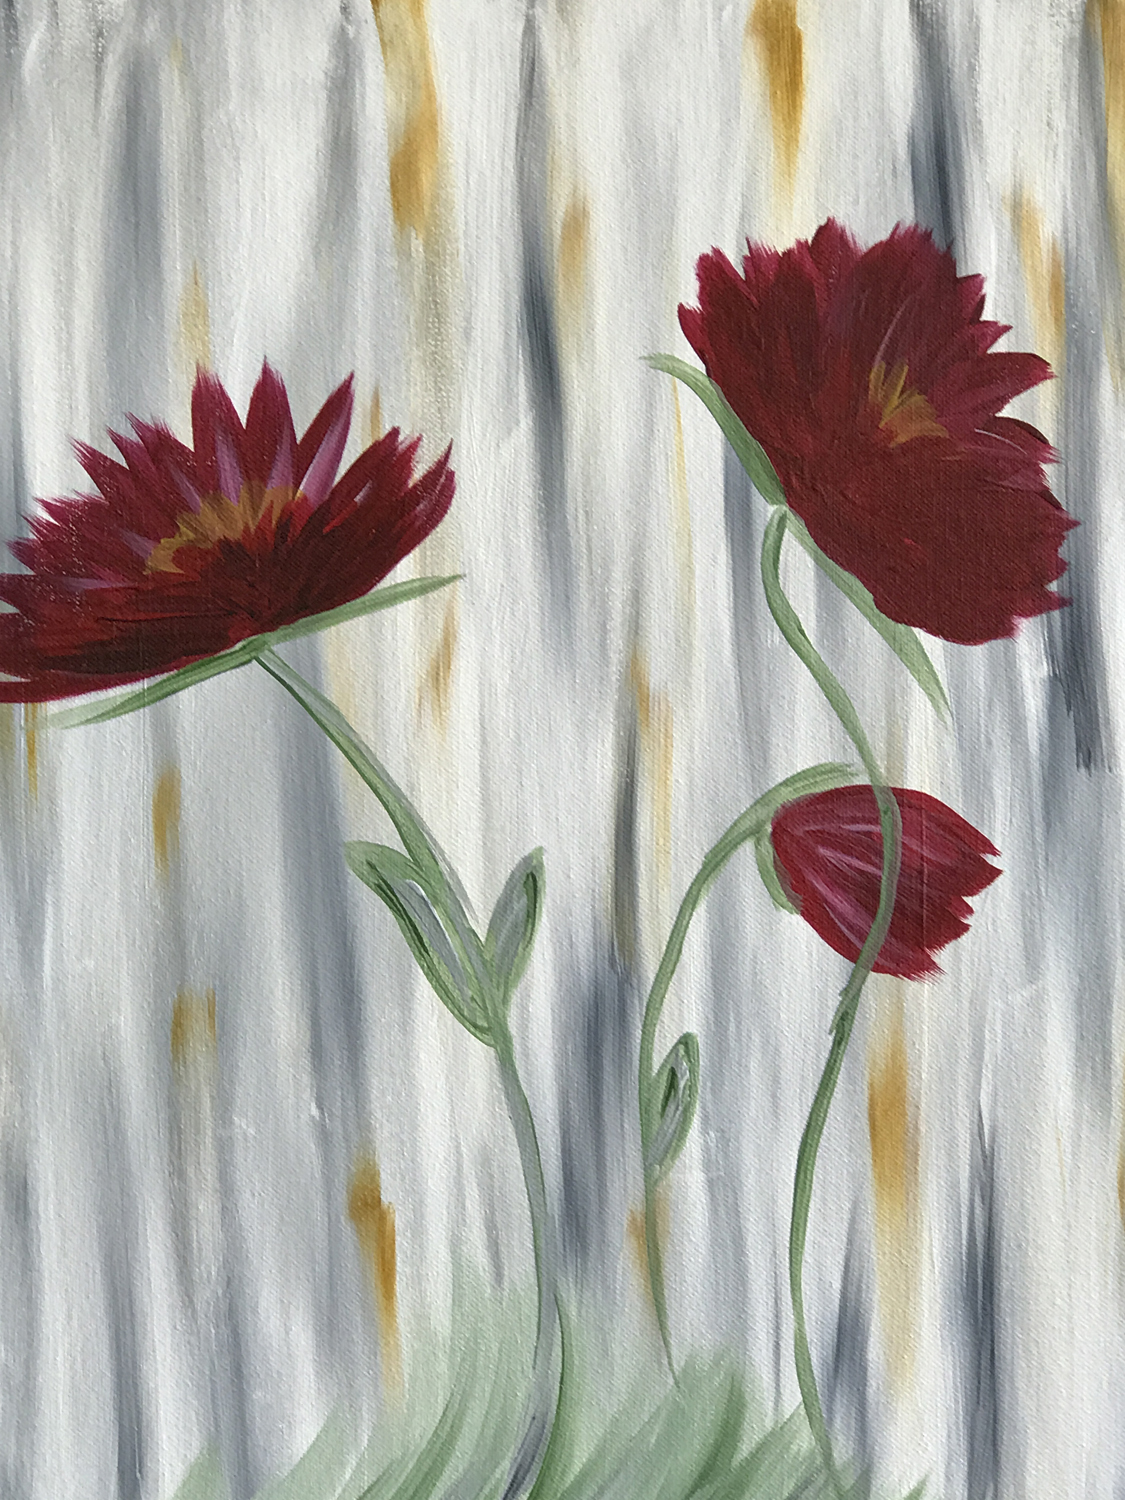 In Studio – Burgundy Flowers